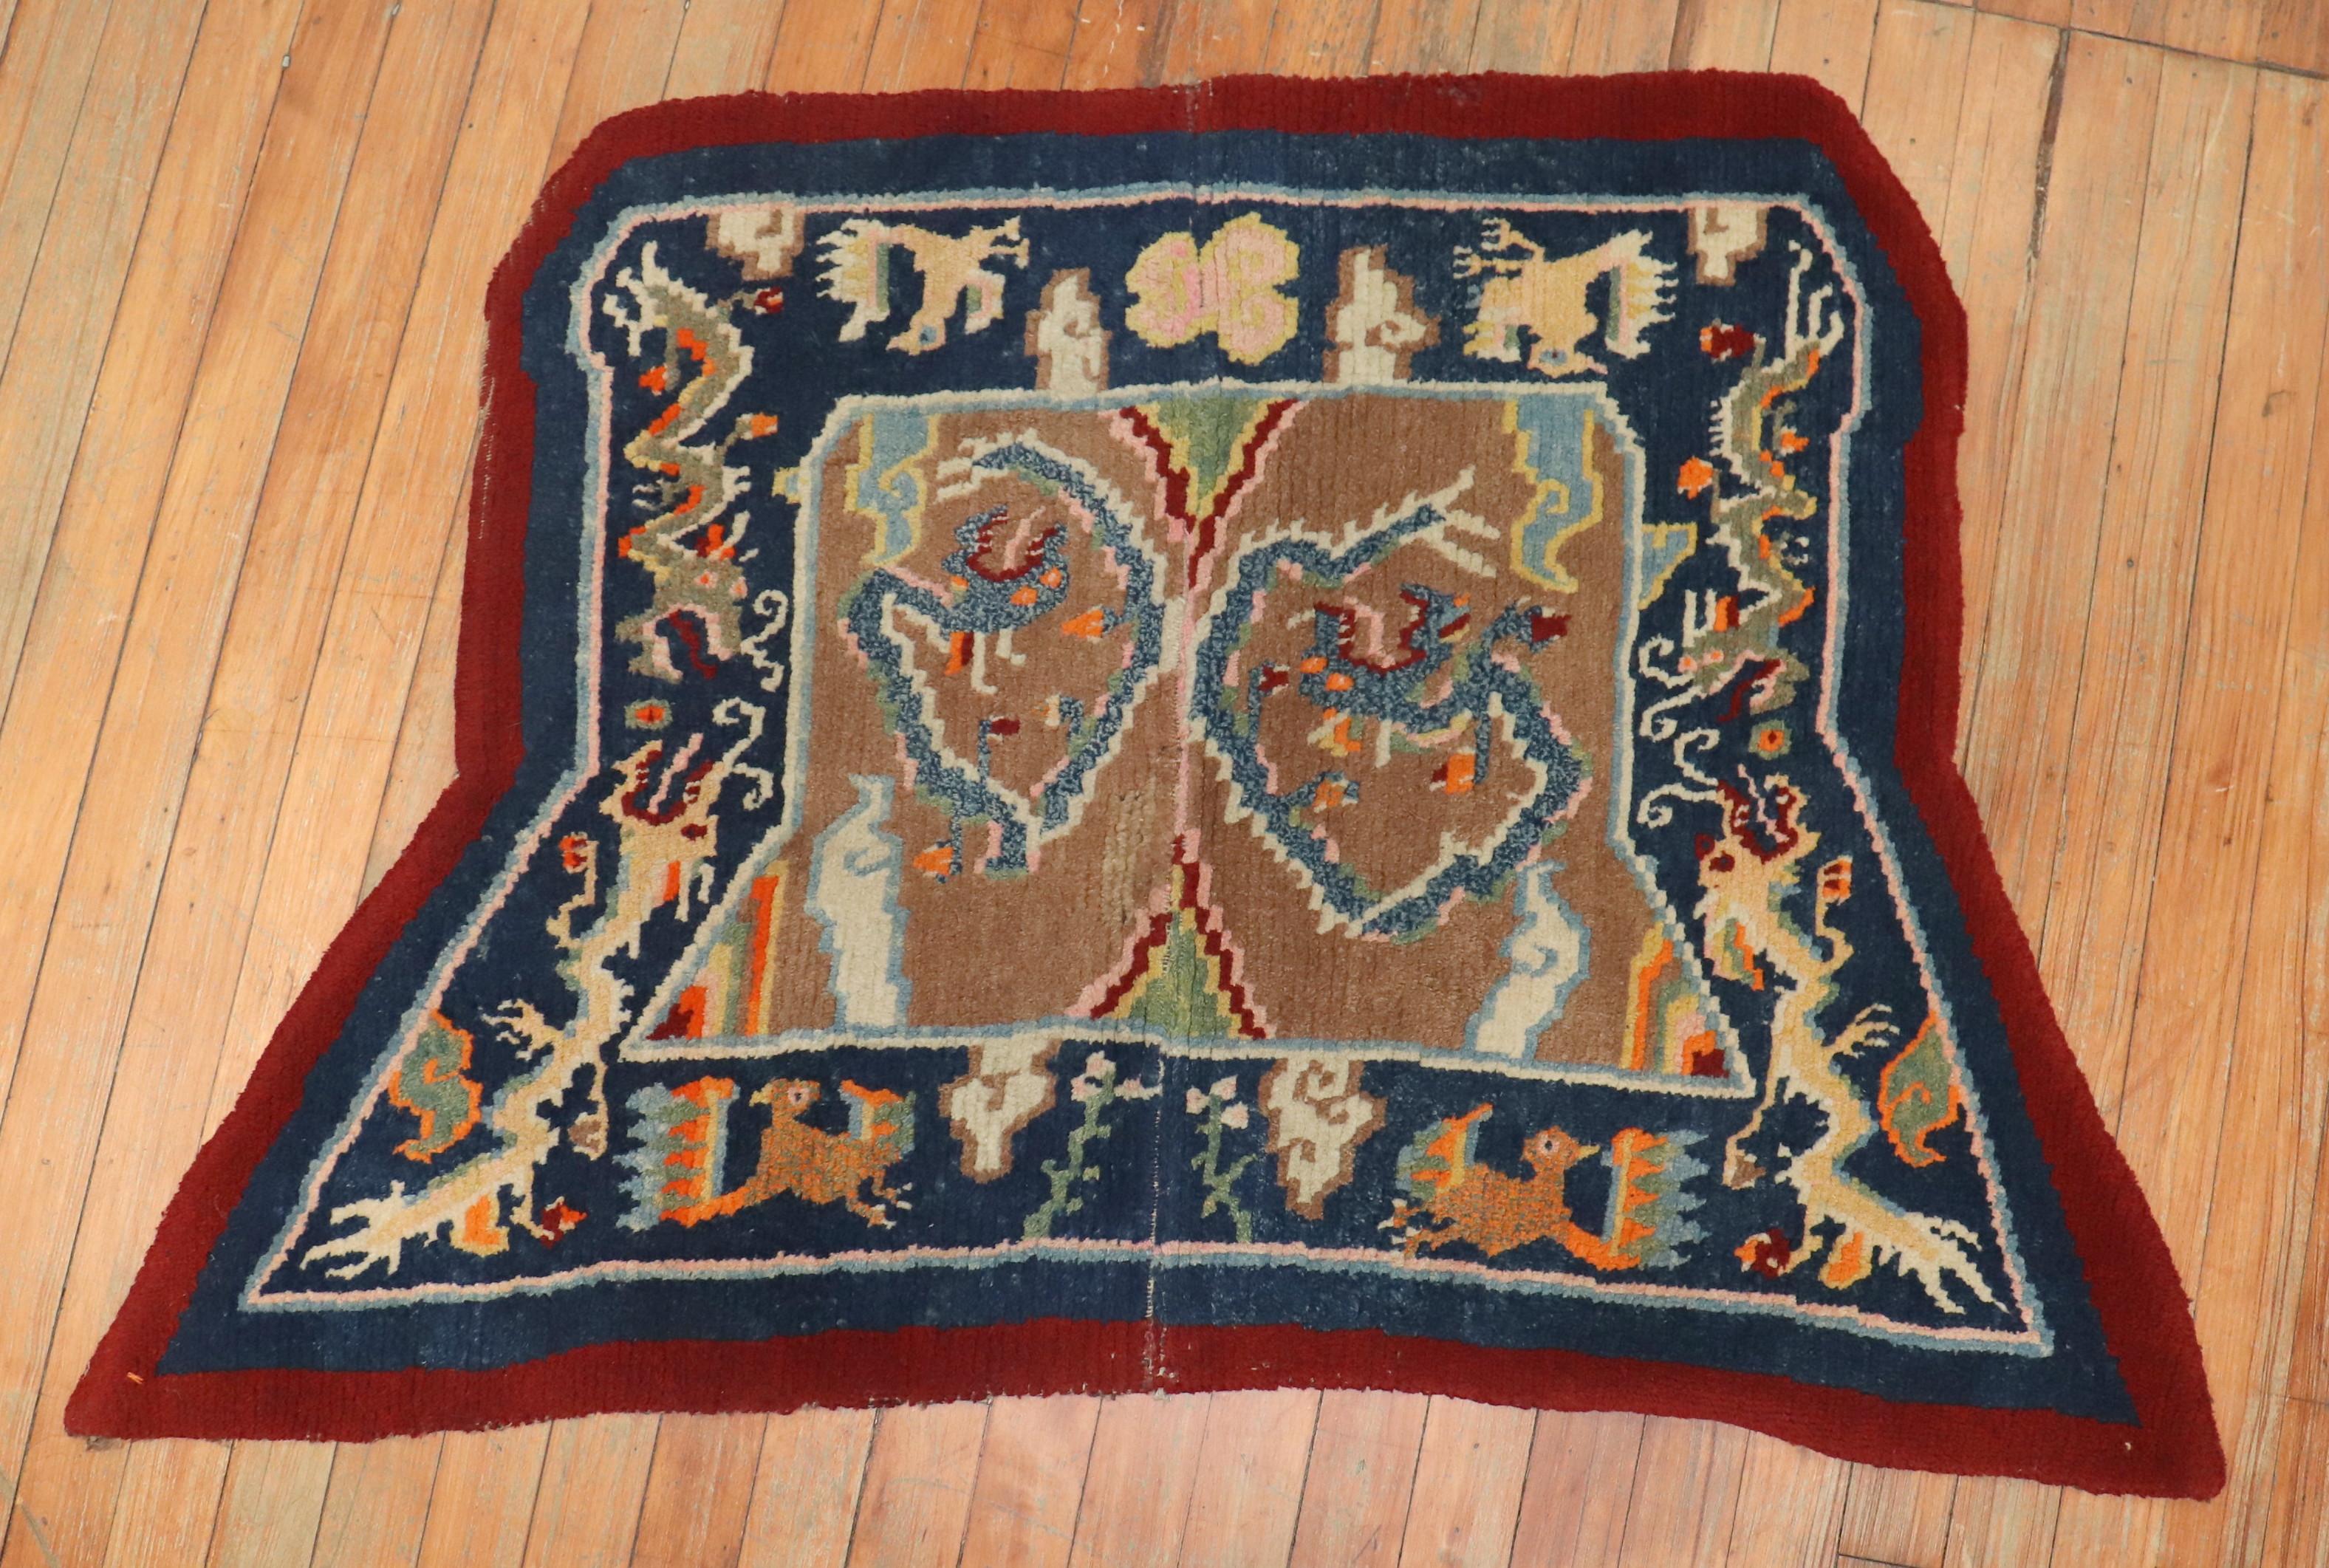 An early 20th century Tibetan dragon horse cover textile rug,

circa 1900, measures: 2'5